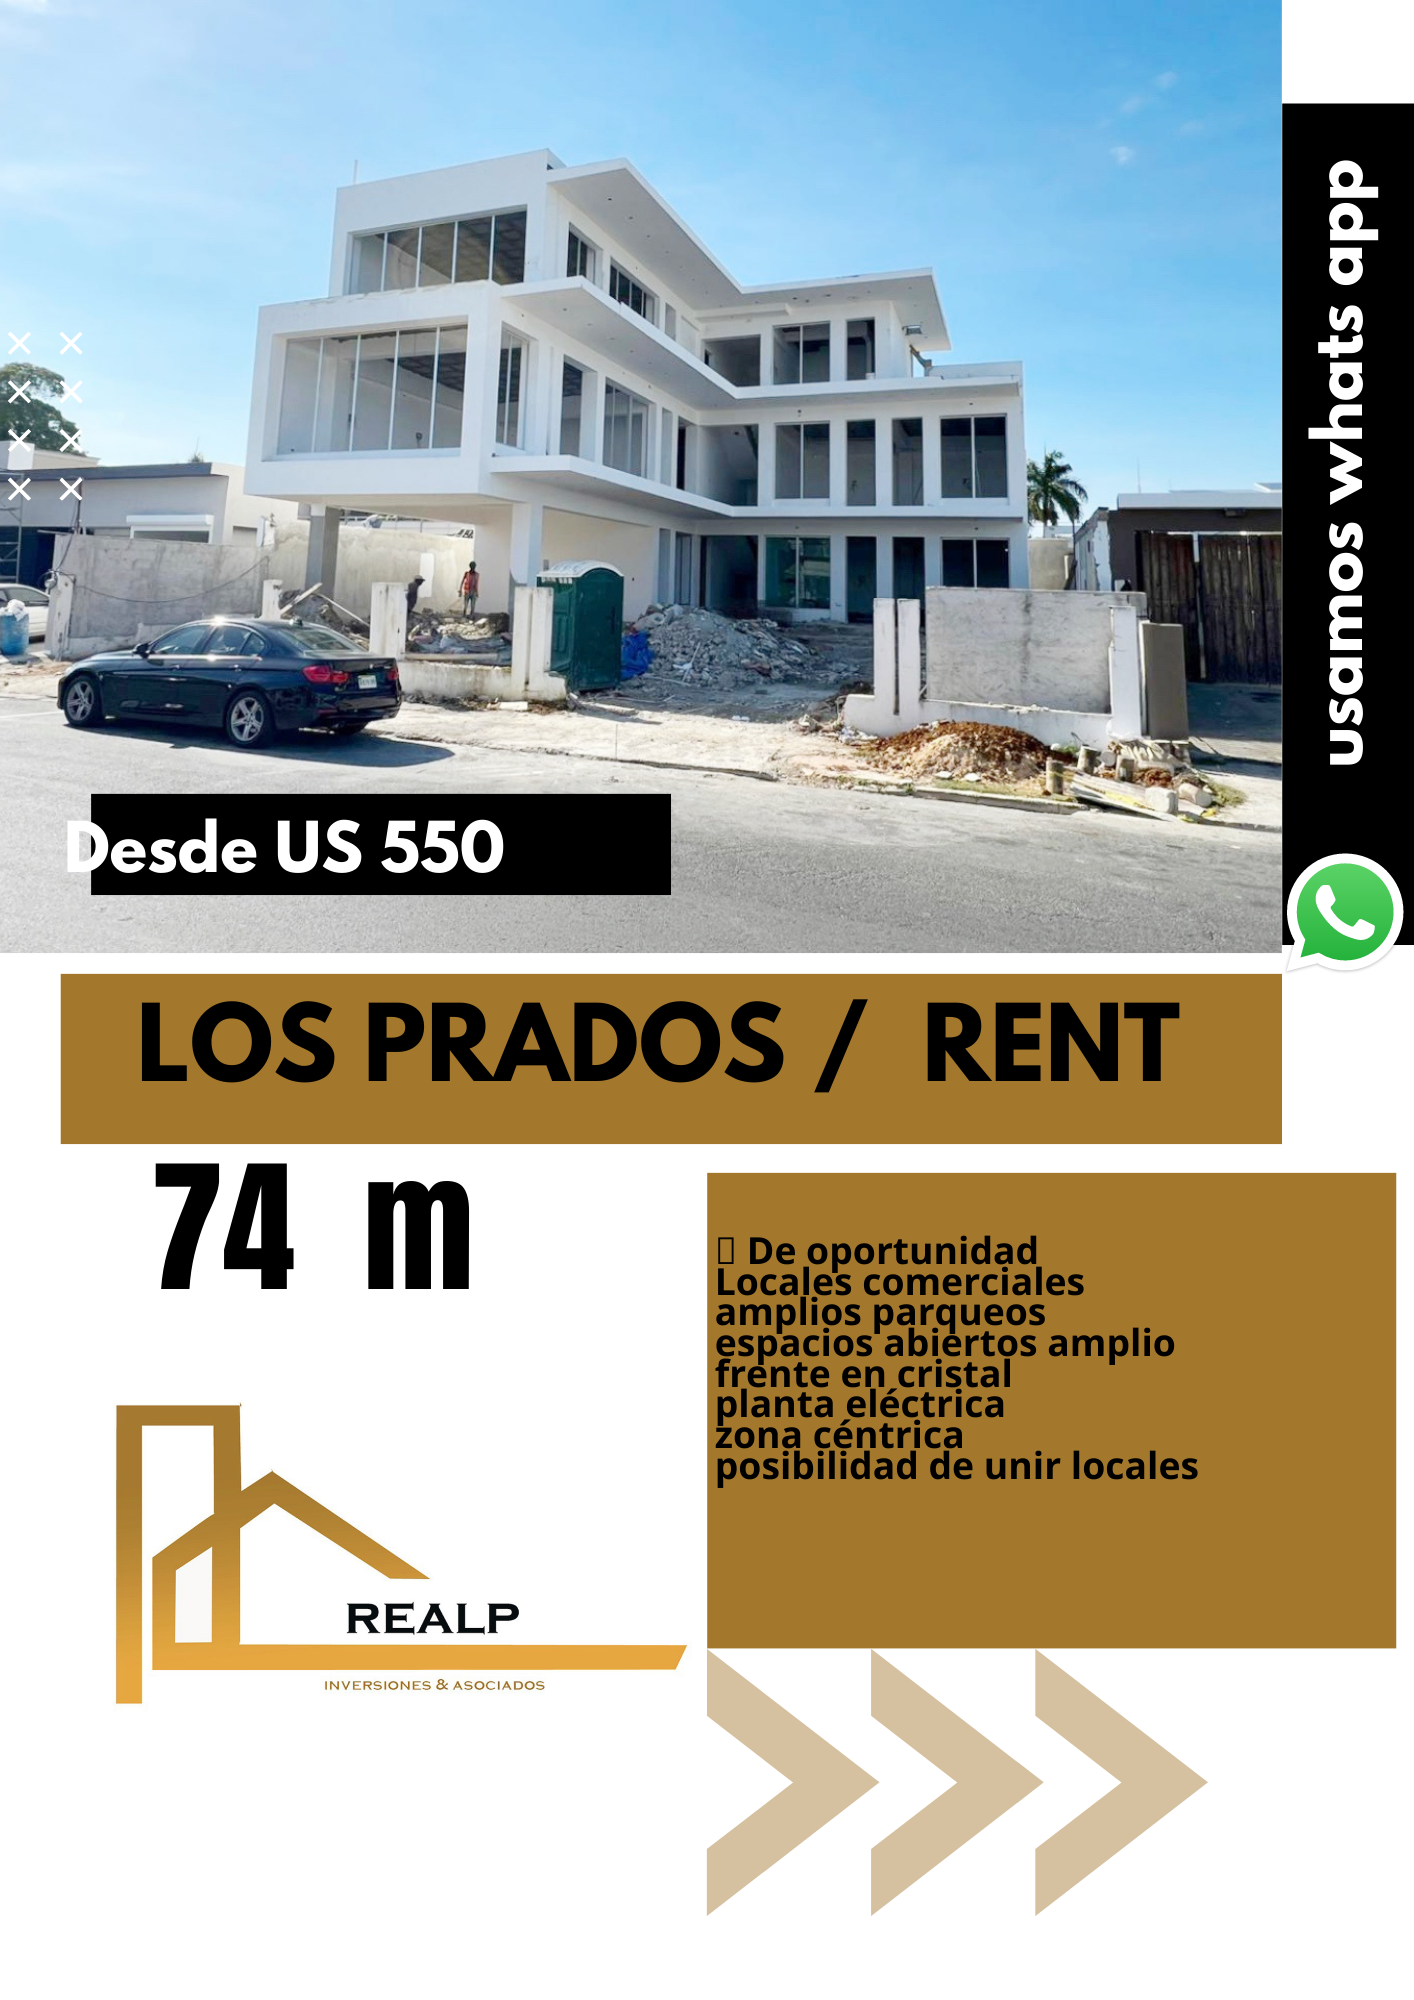 oficinas y locales comerciales - Locales comerciales en los Prados 0